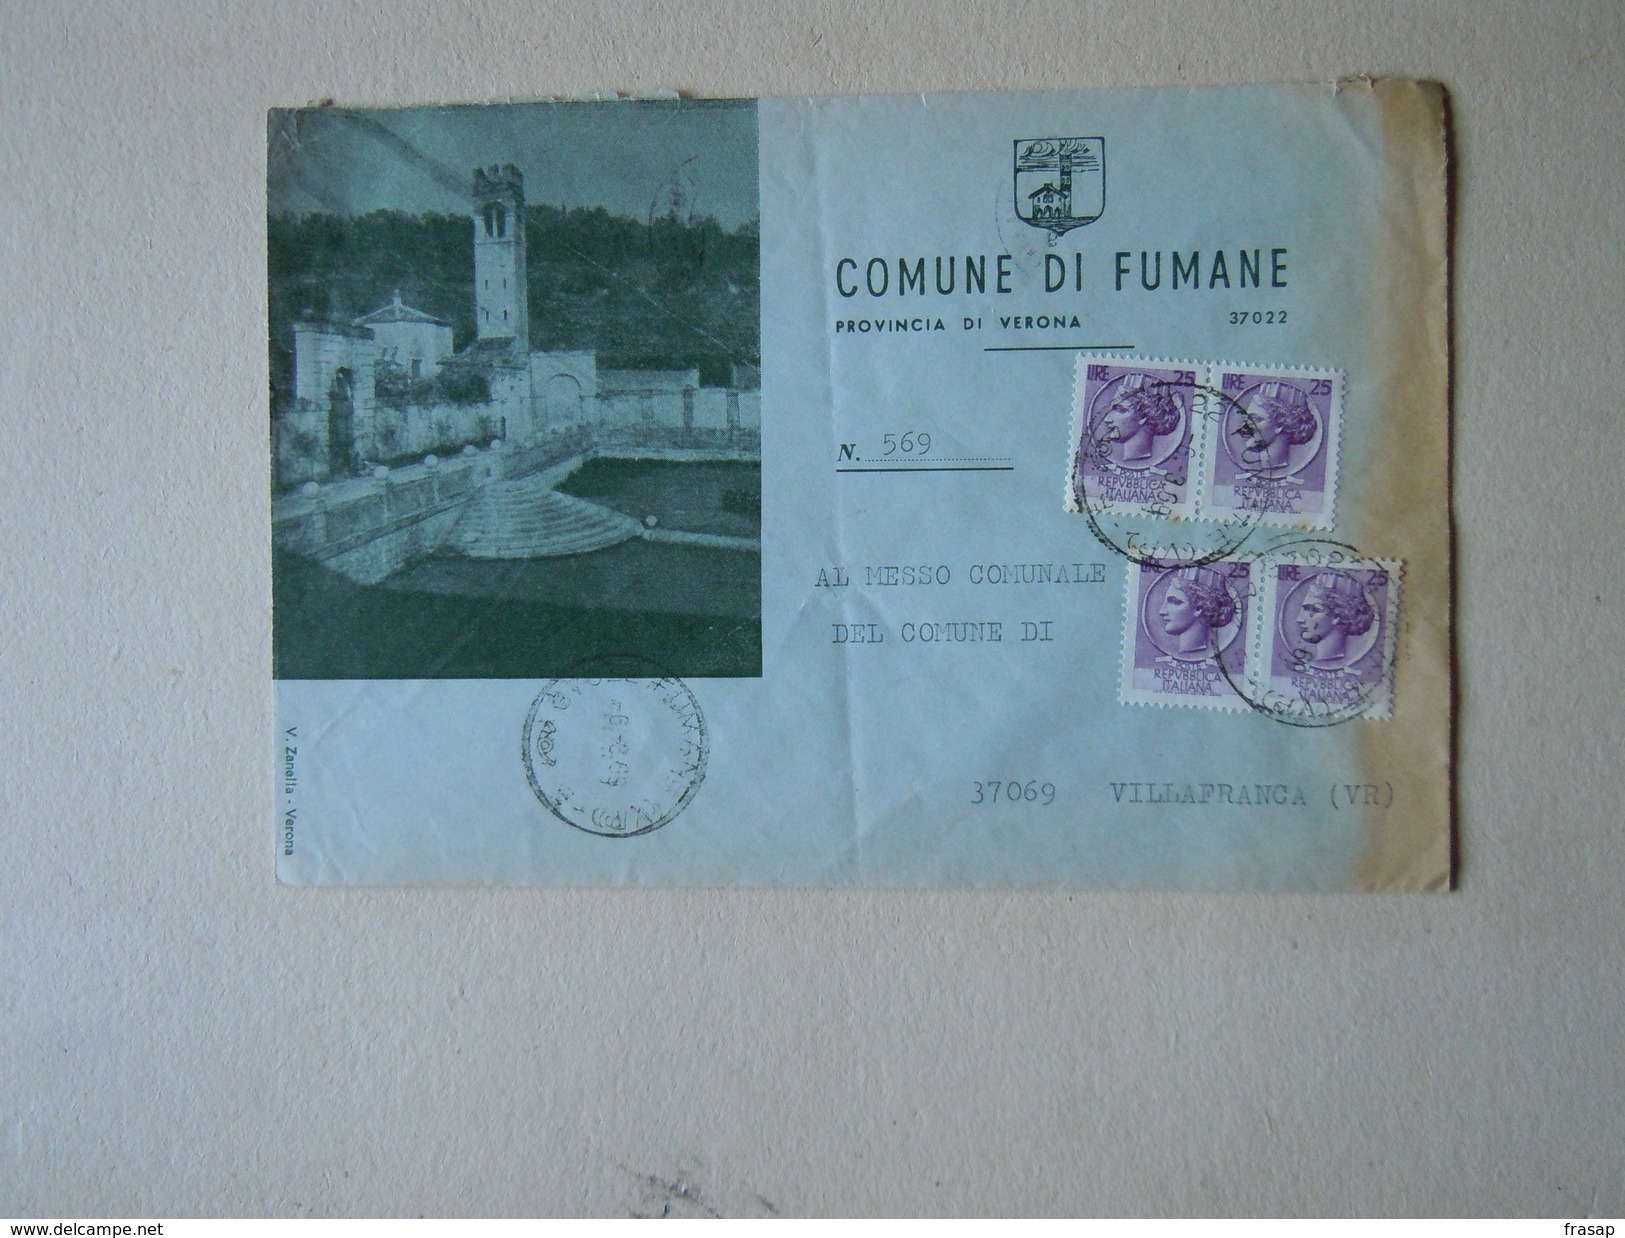 TEMATICA BUSTE COMUNALI - COMUNE DI  FUMANE   N 3 1969 - Covers